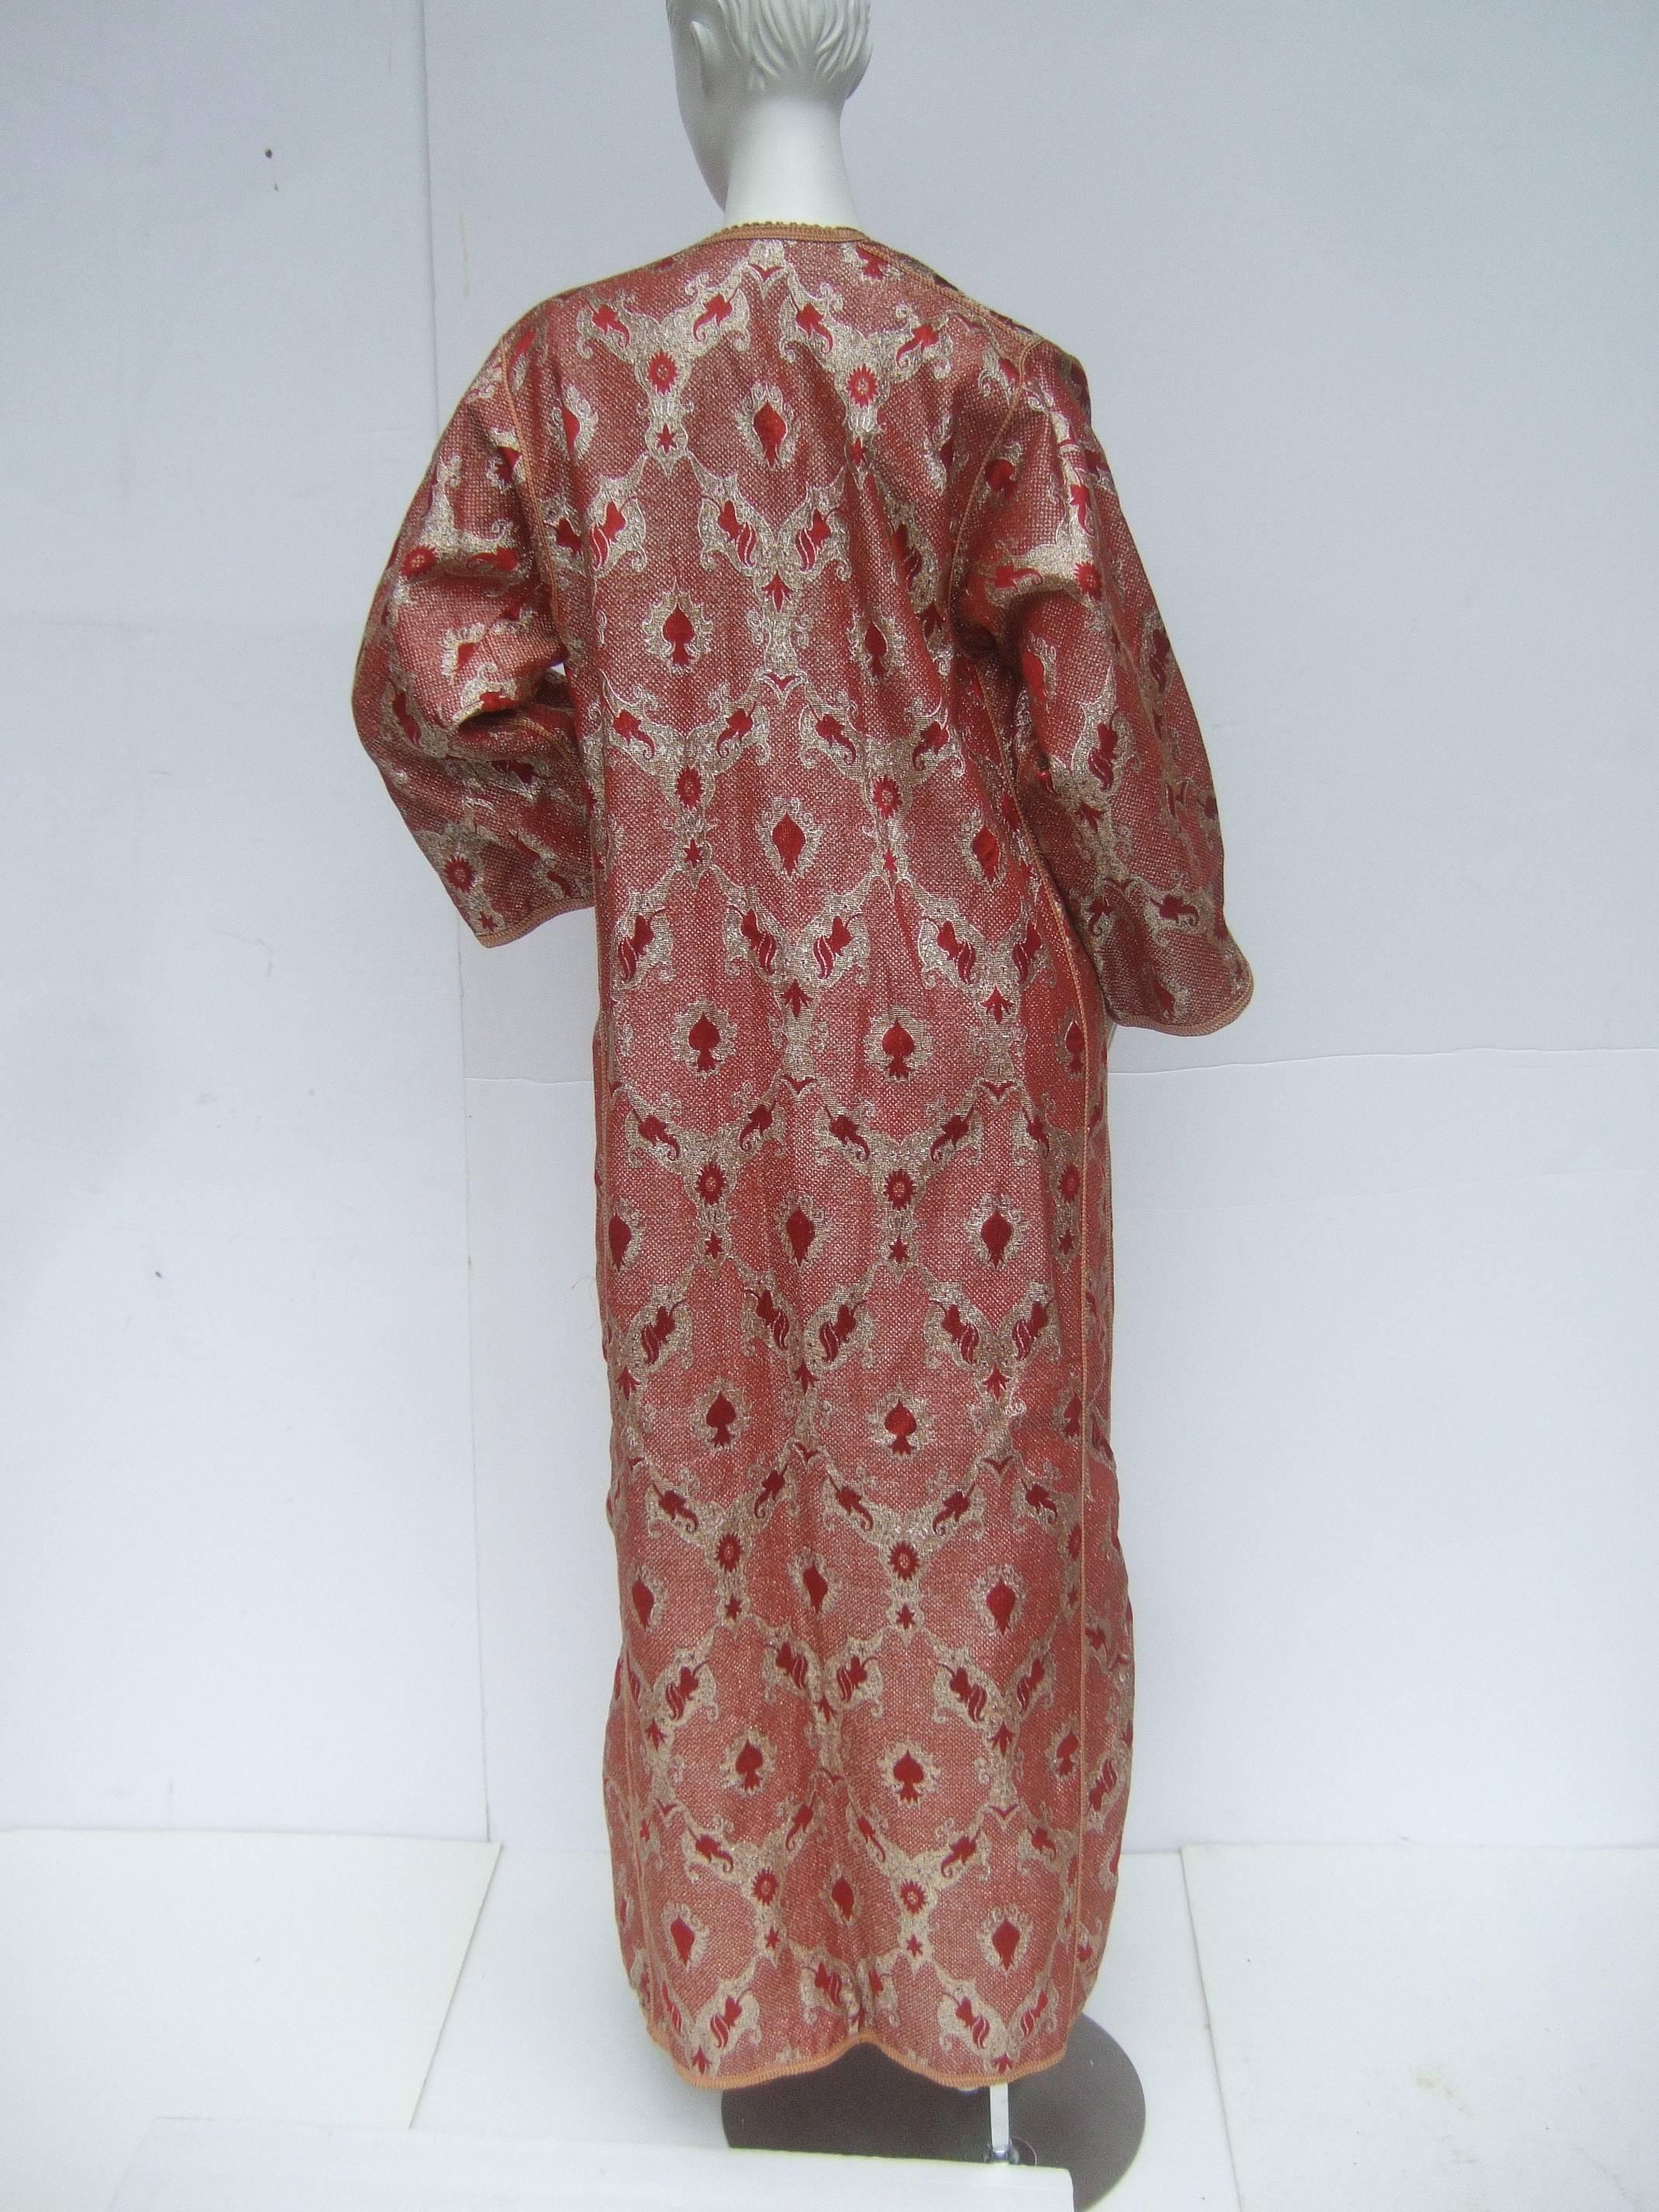 Exotic Metalllic Brocade Caftan Gown c 1970s 1